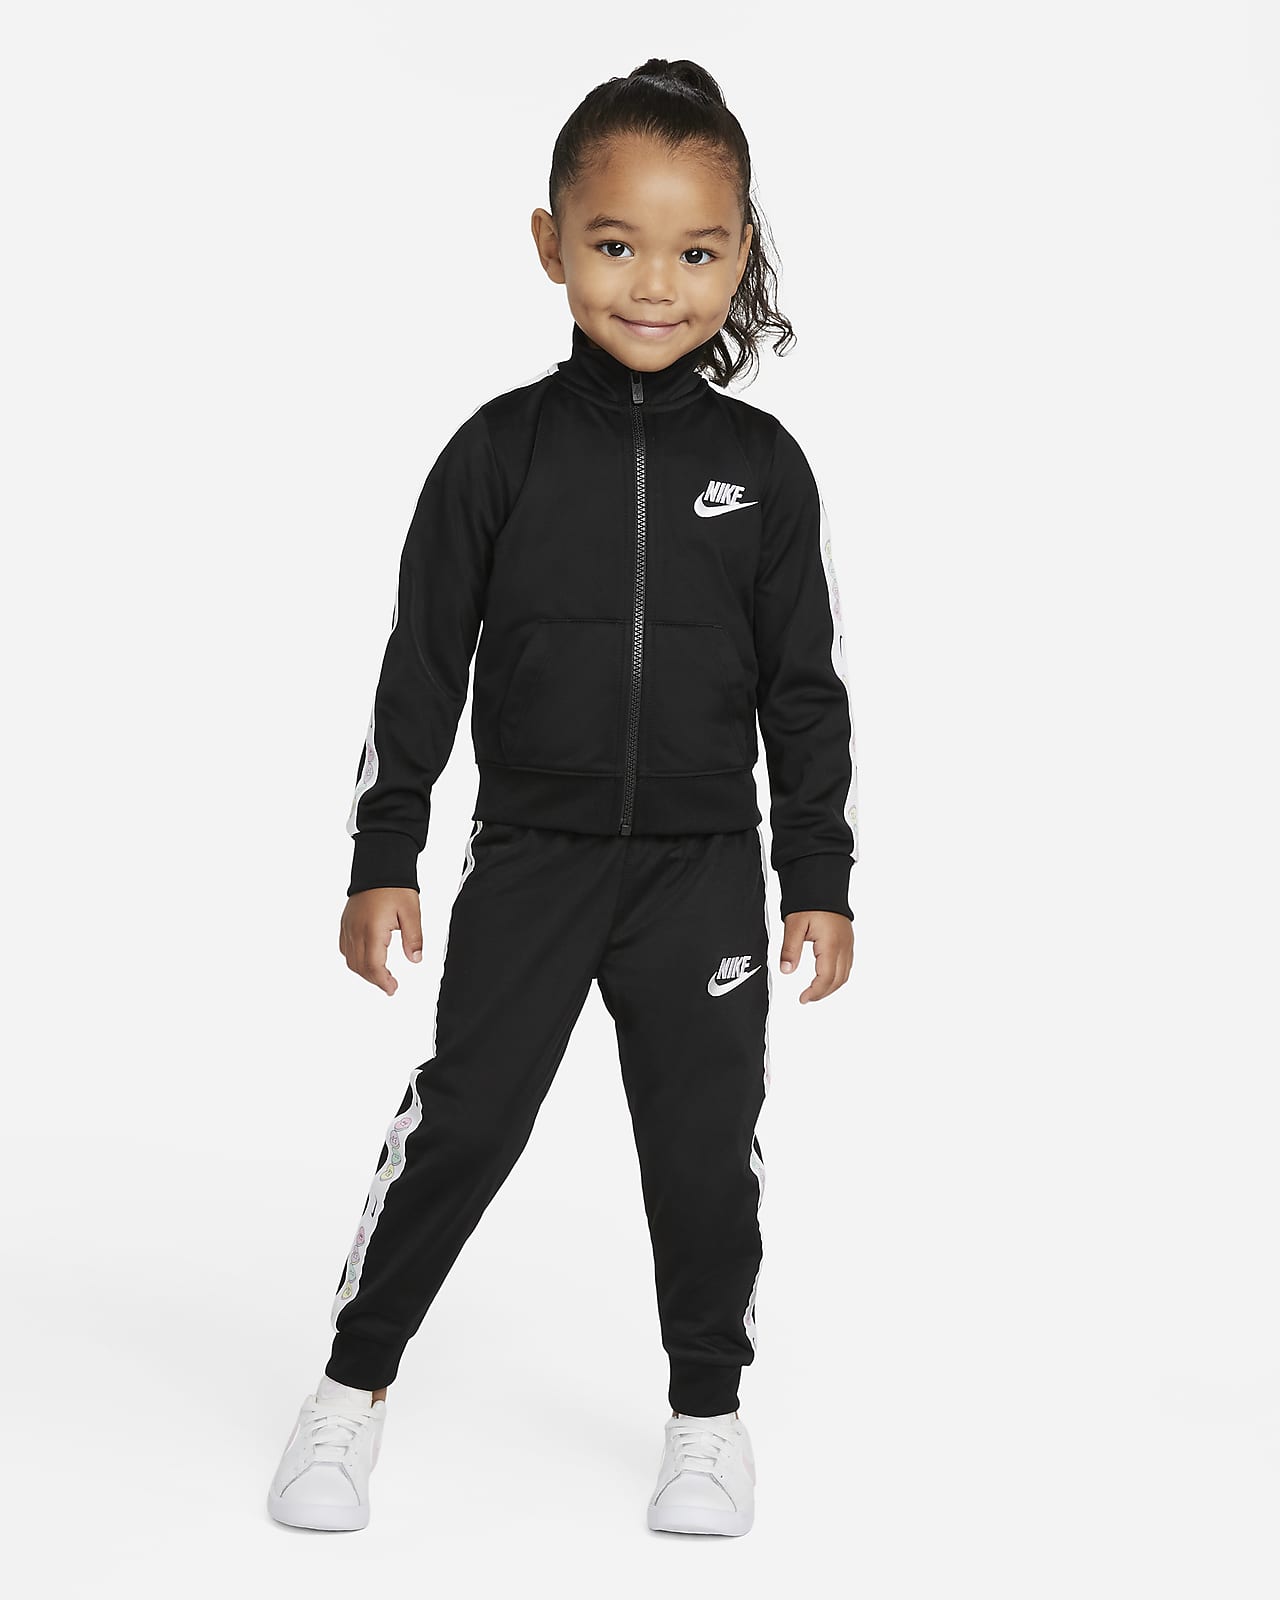 Nike Trainingsanzug-Set für Kleinkinder